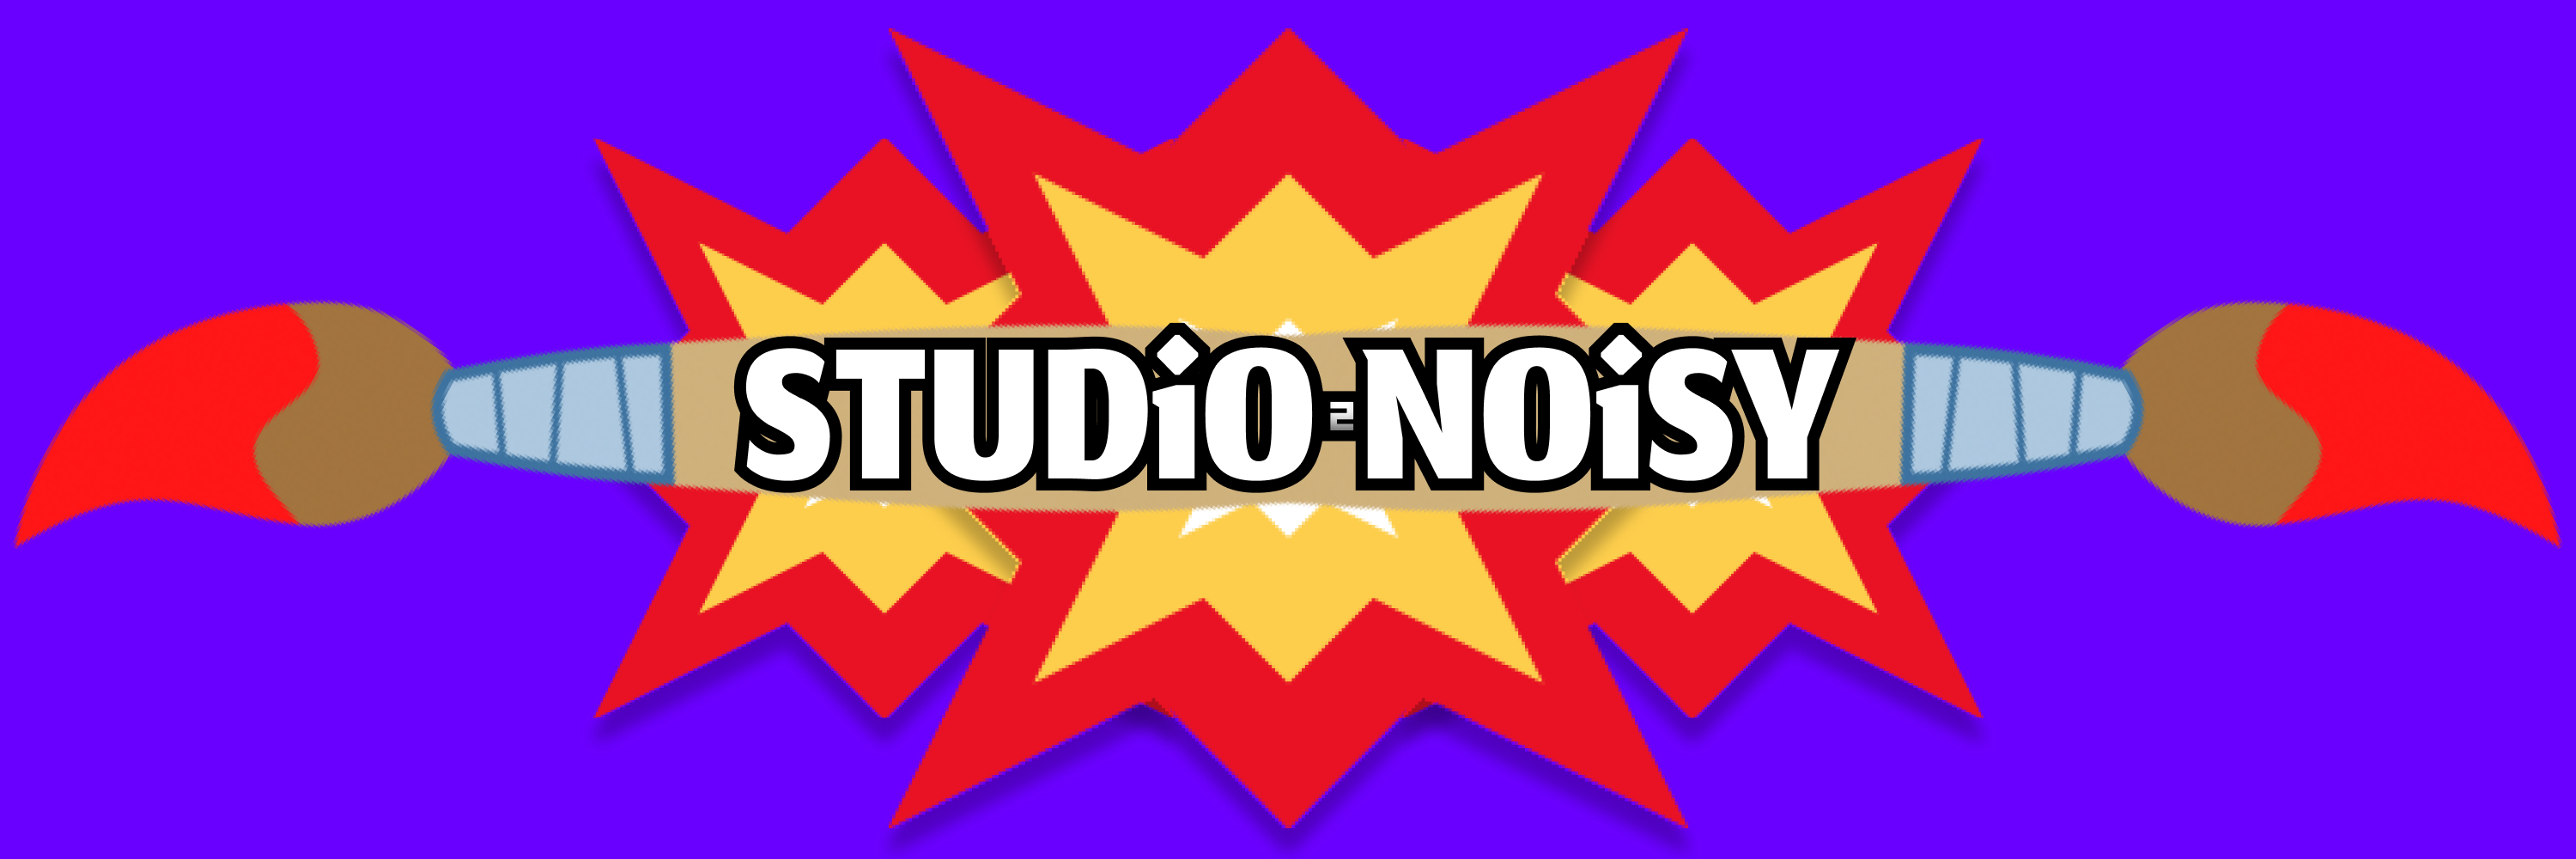 StudioNoisy banner